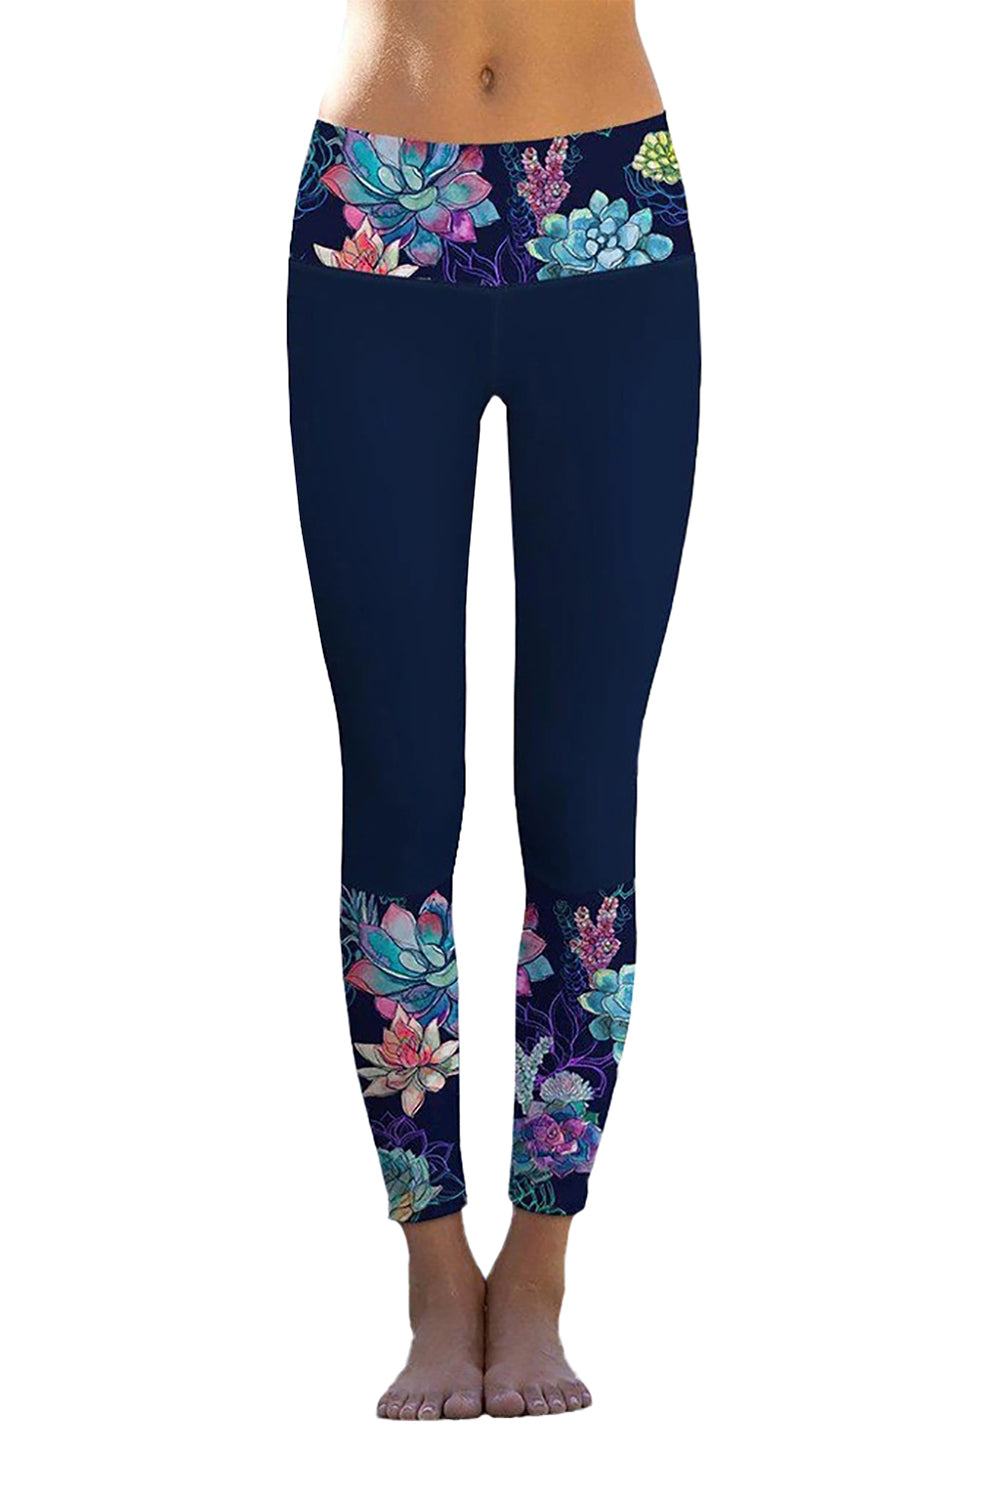 Floral Printed Details Leggings Yoga Pants